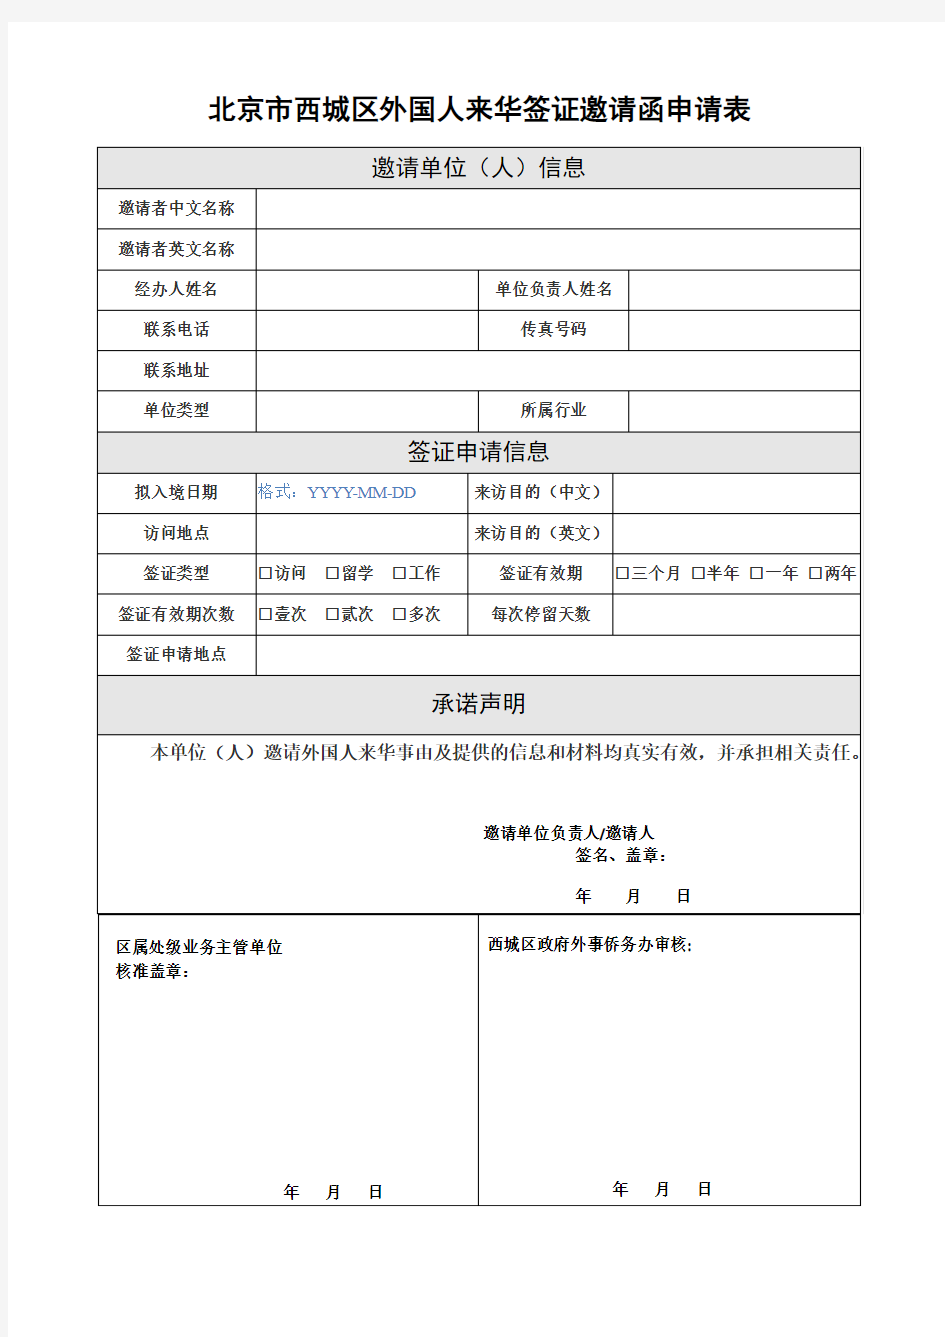 北京市西城区外国人来华签证邀请函申请表